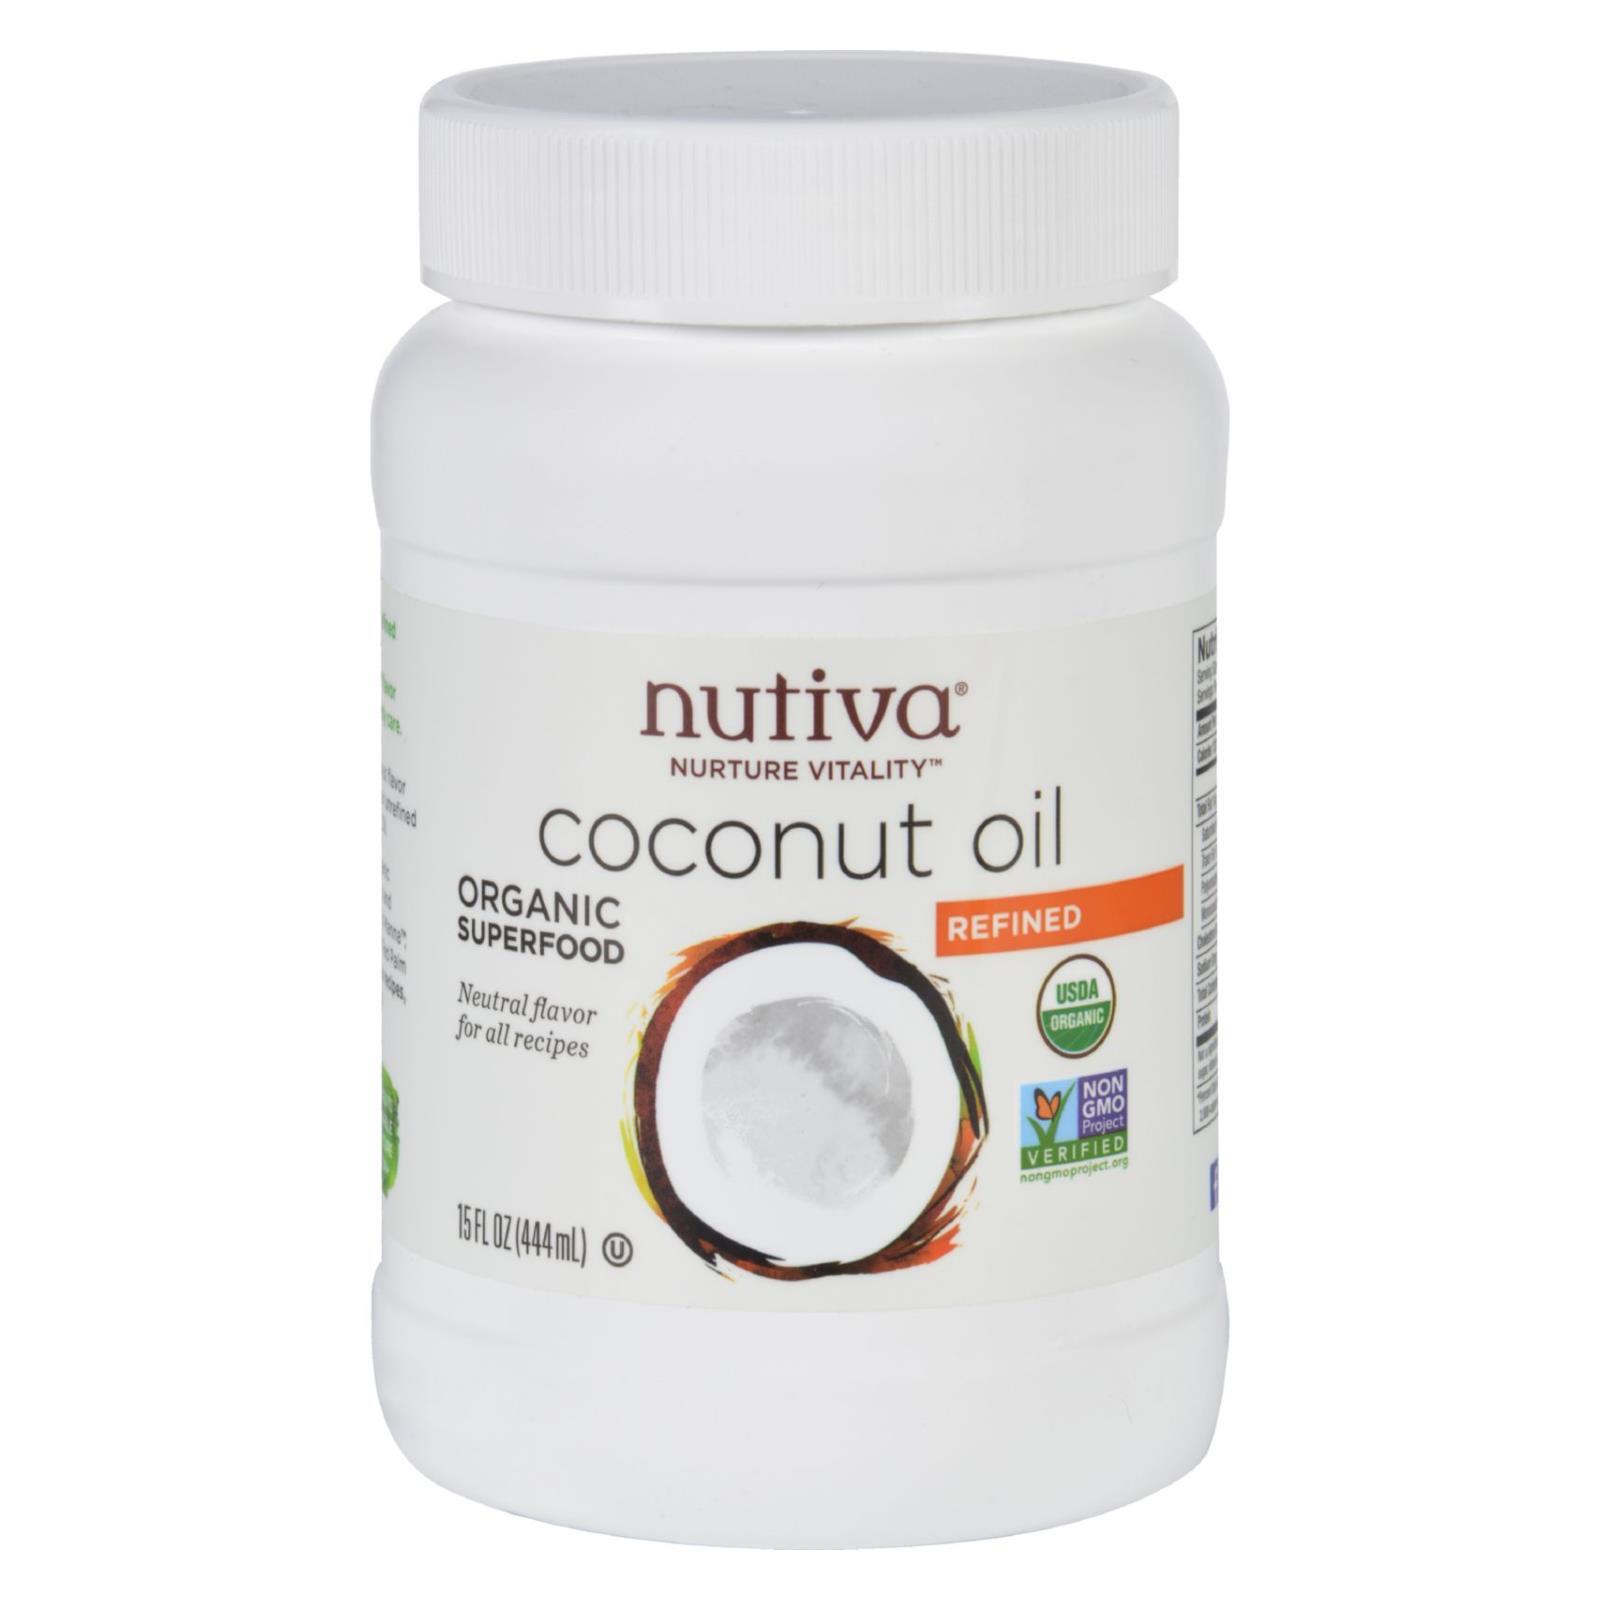 Nutiva Coconut Oil – Organic – Superfood – Refined – 15 oz